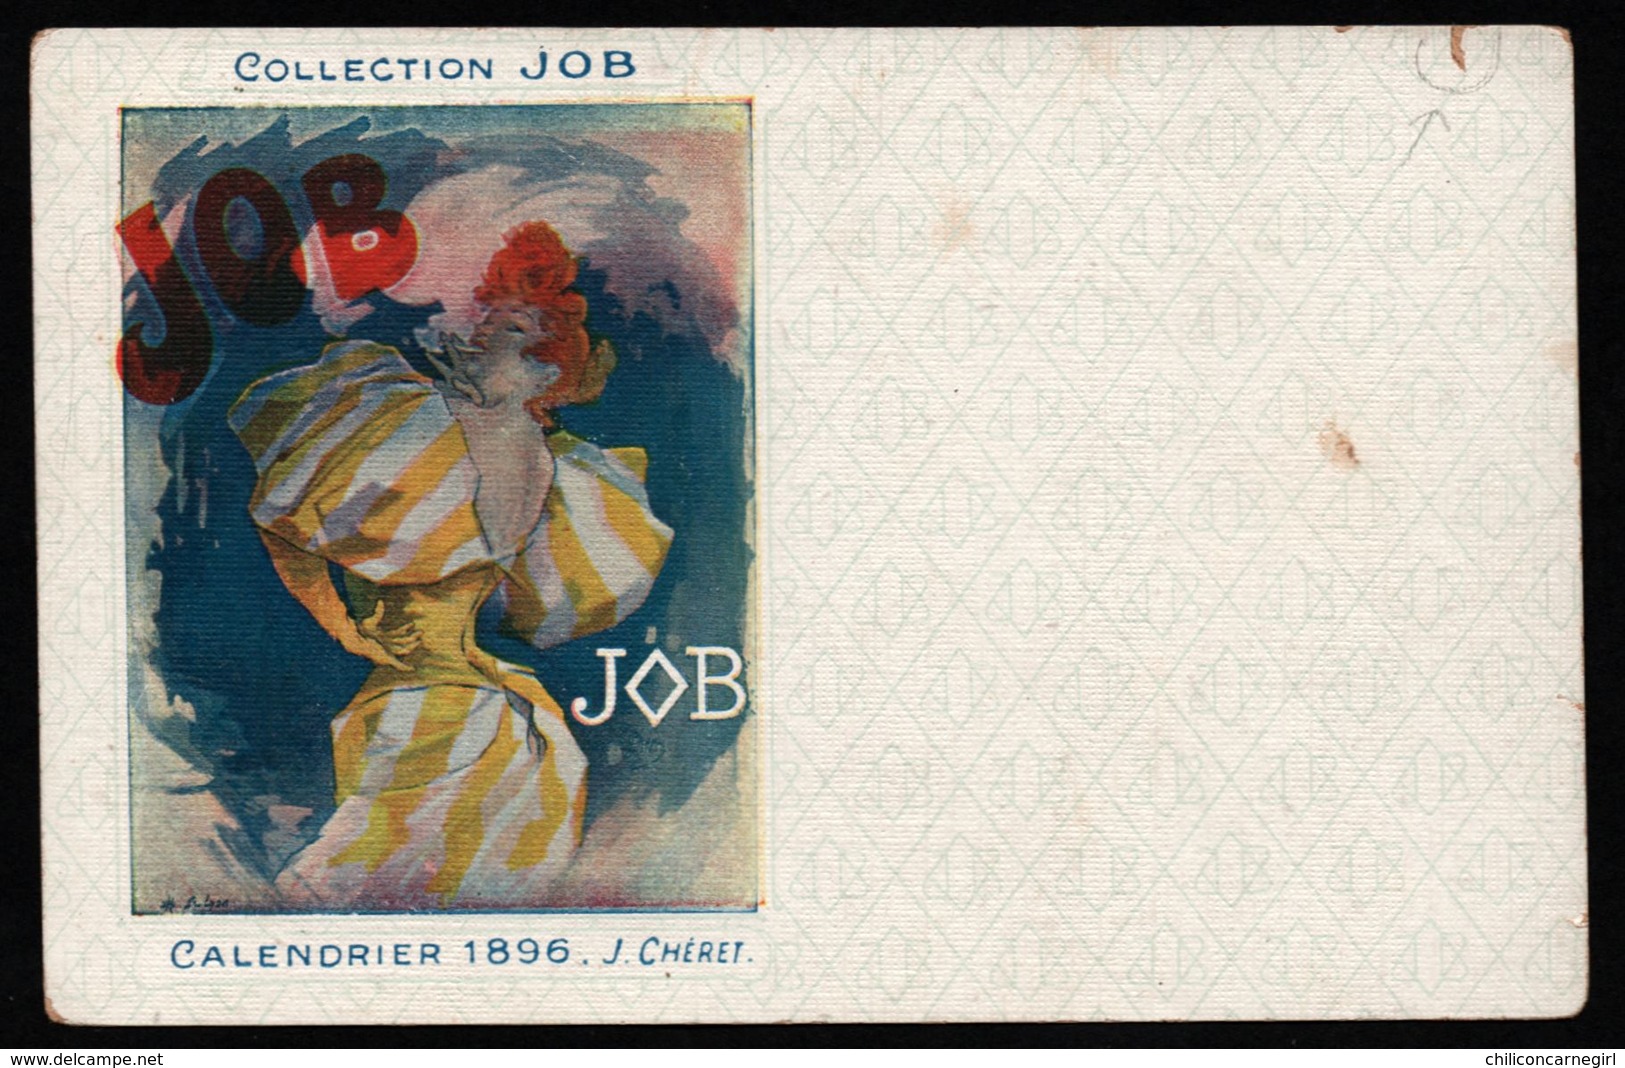 Illustration Signée J. CHERET - Collection JOB - Calendrier 1896 - Femme - Cigarette - Art Nouveau - Chéret